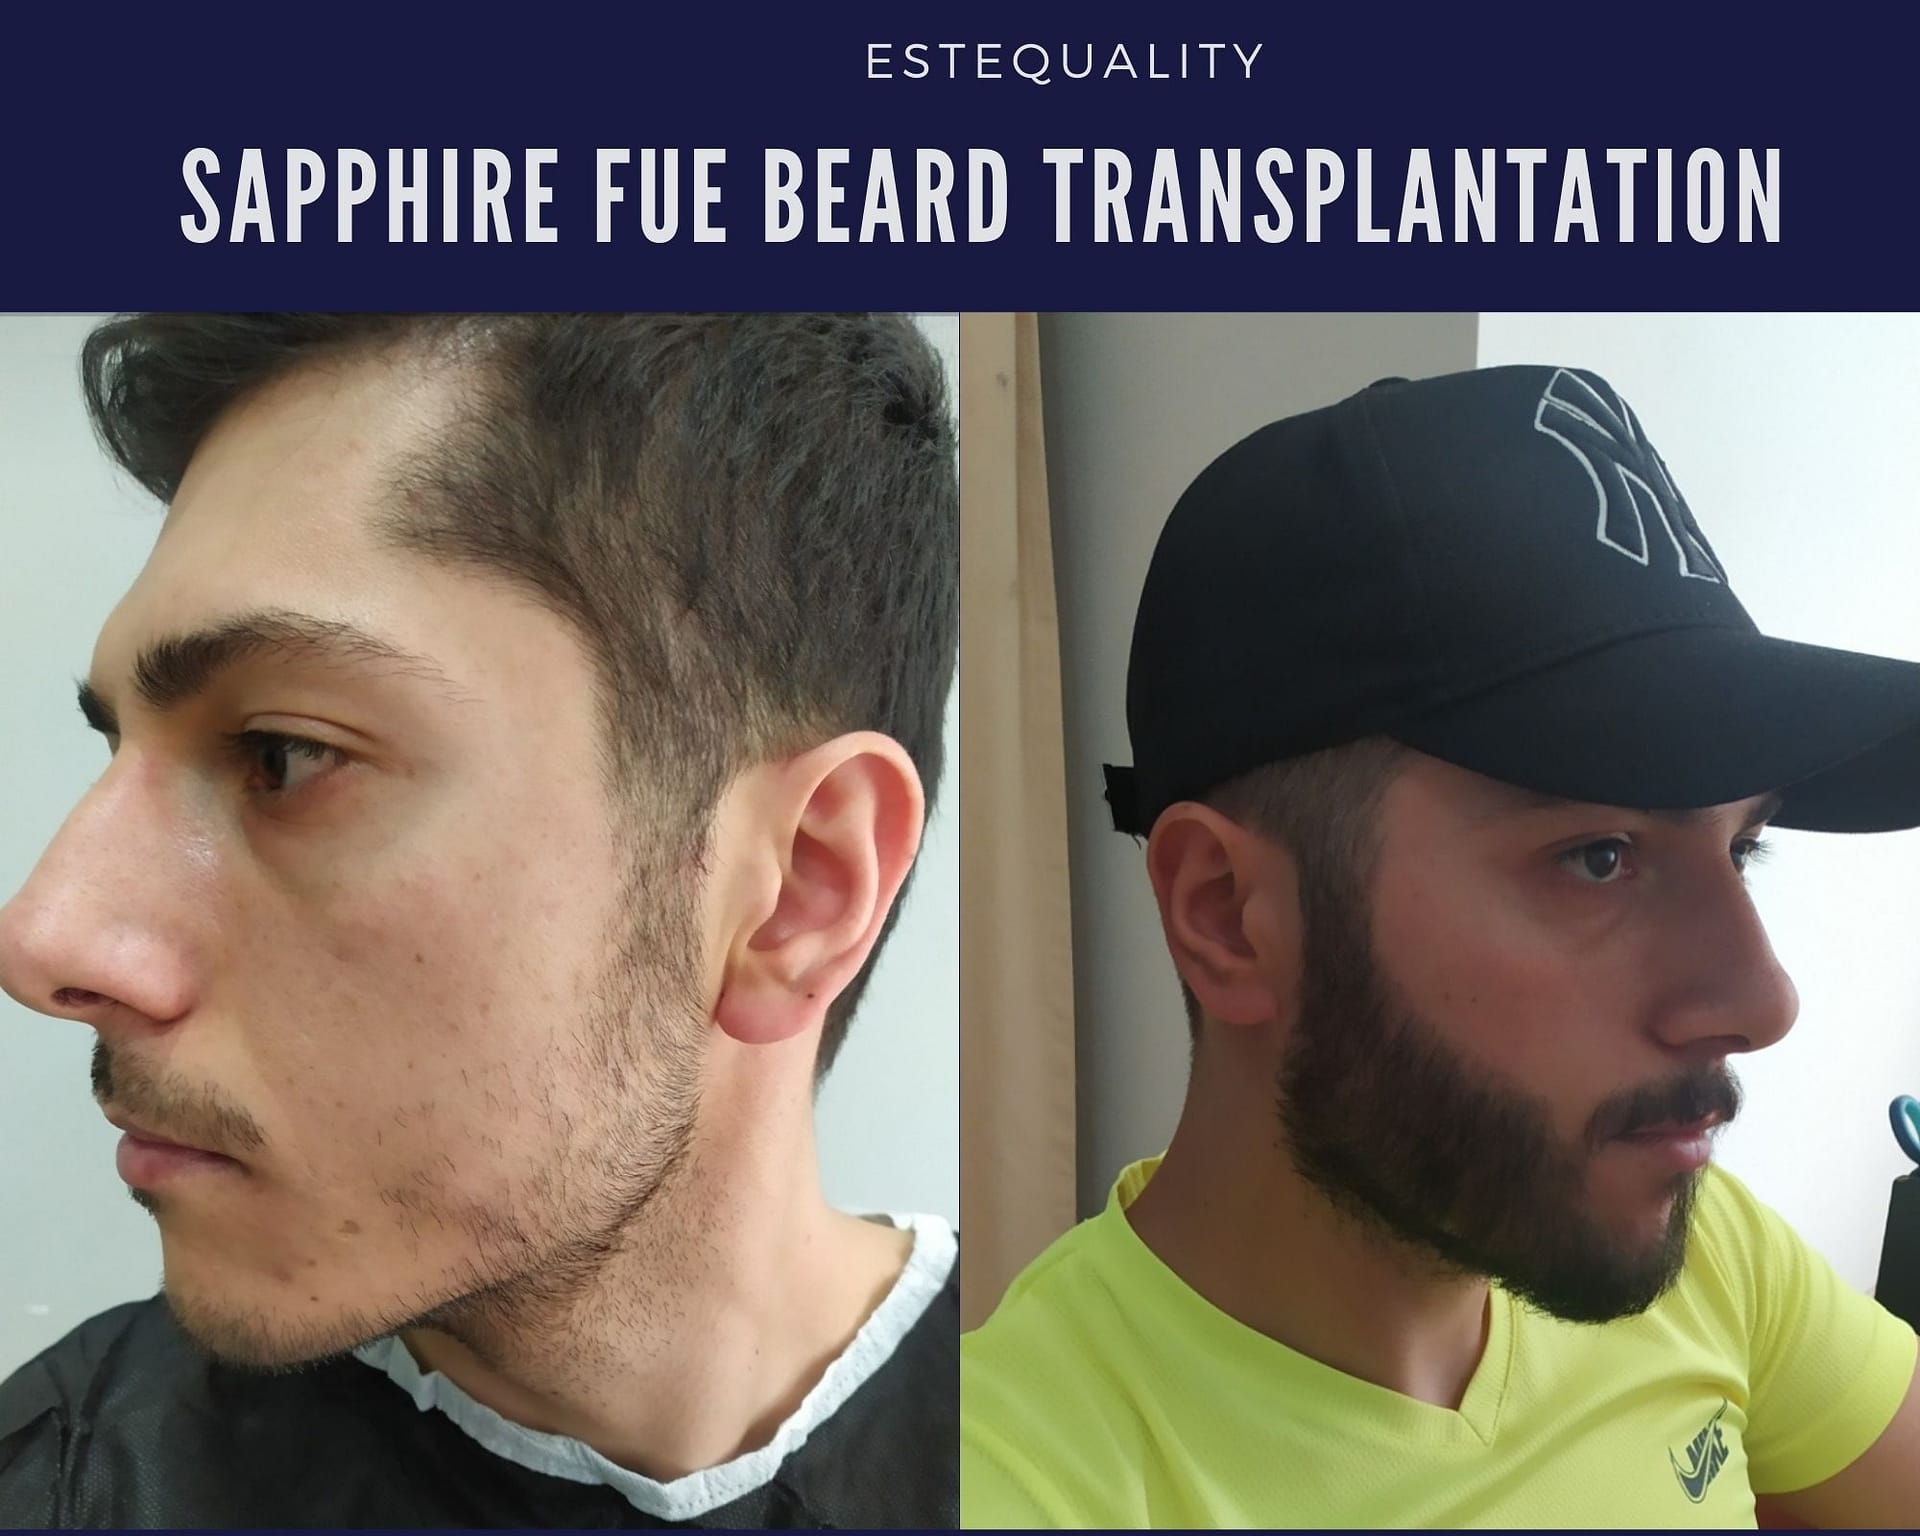 Sapphire FUE Beard Transplant in Turkey